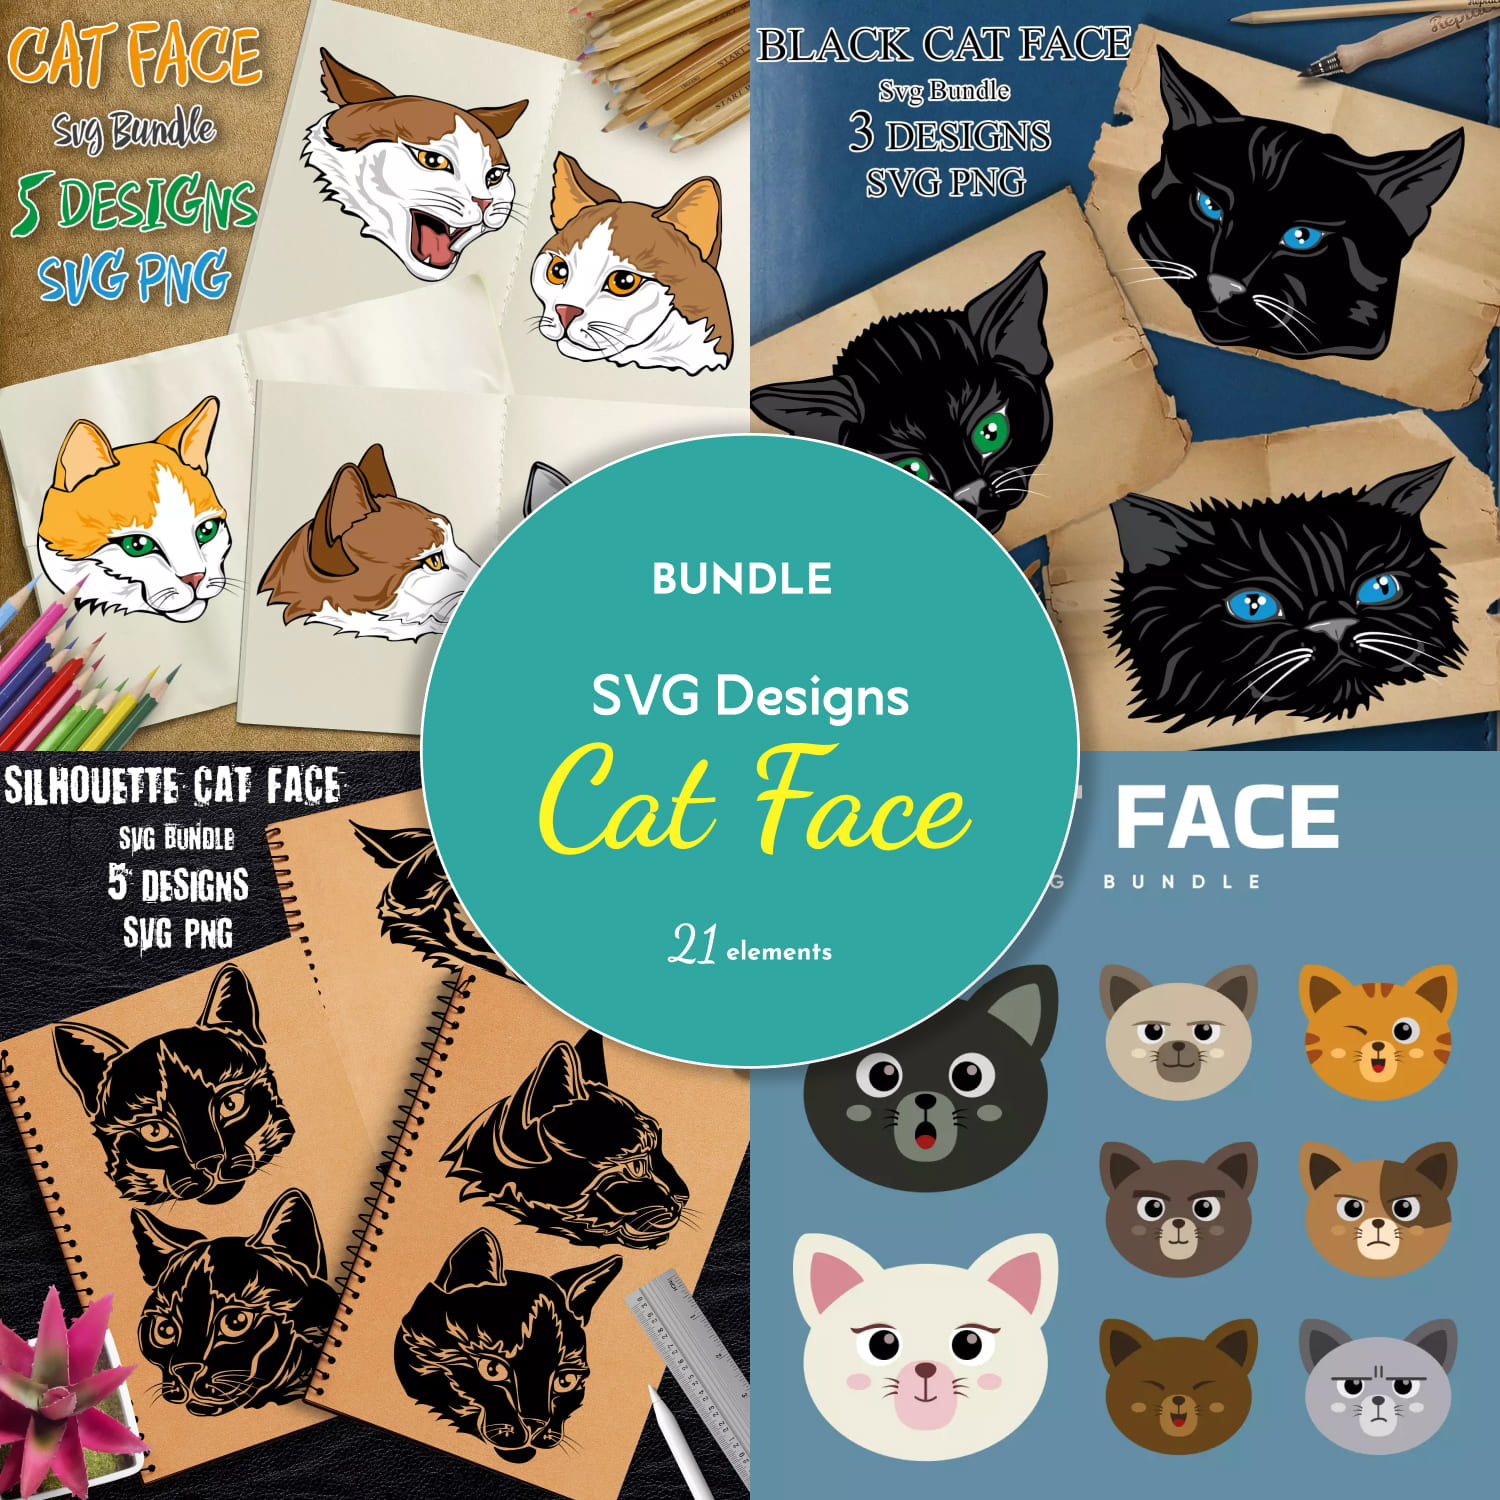 Preview cat face svg designs bundle.